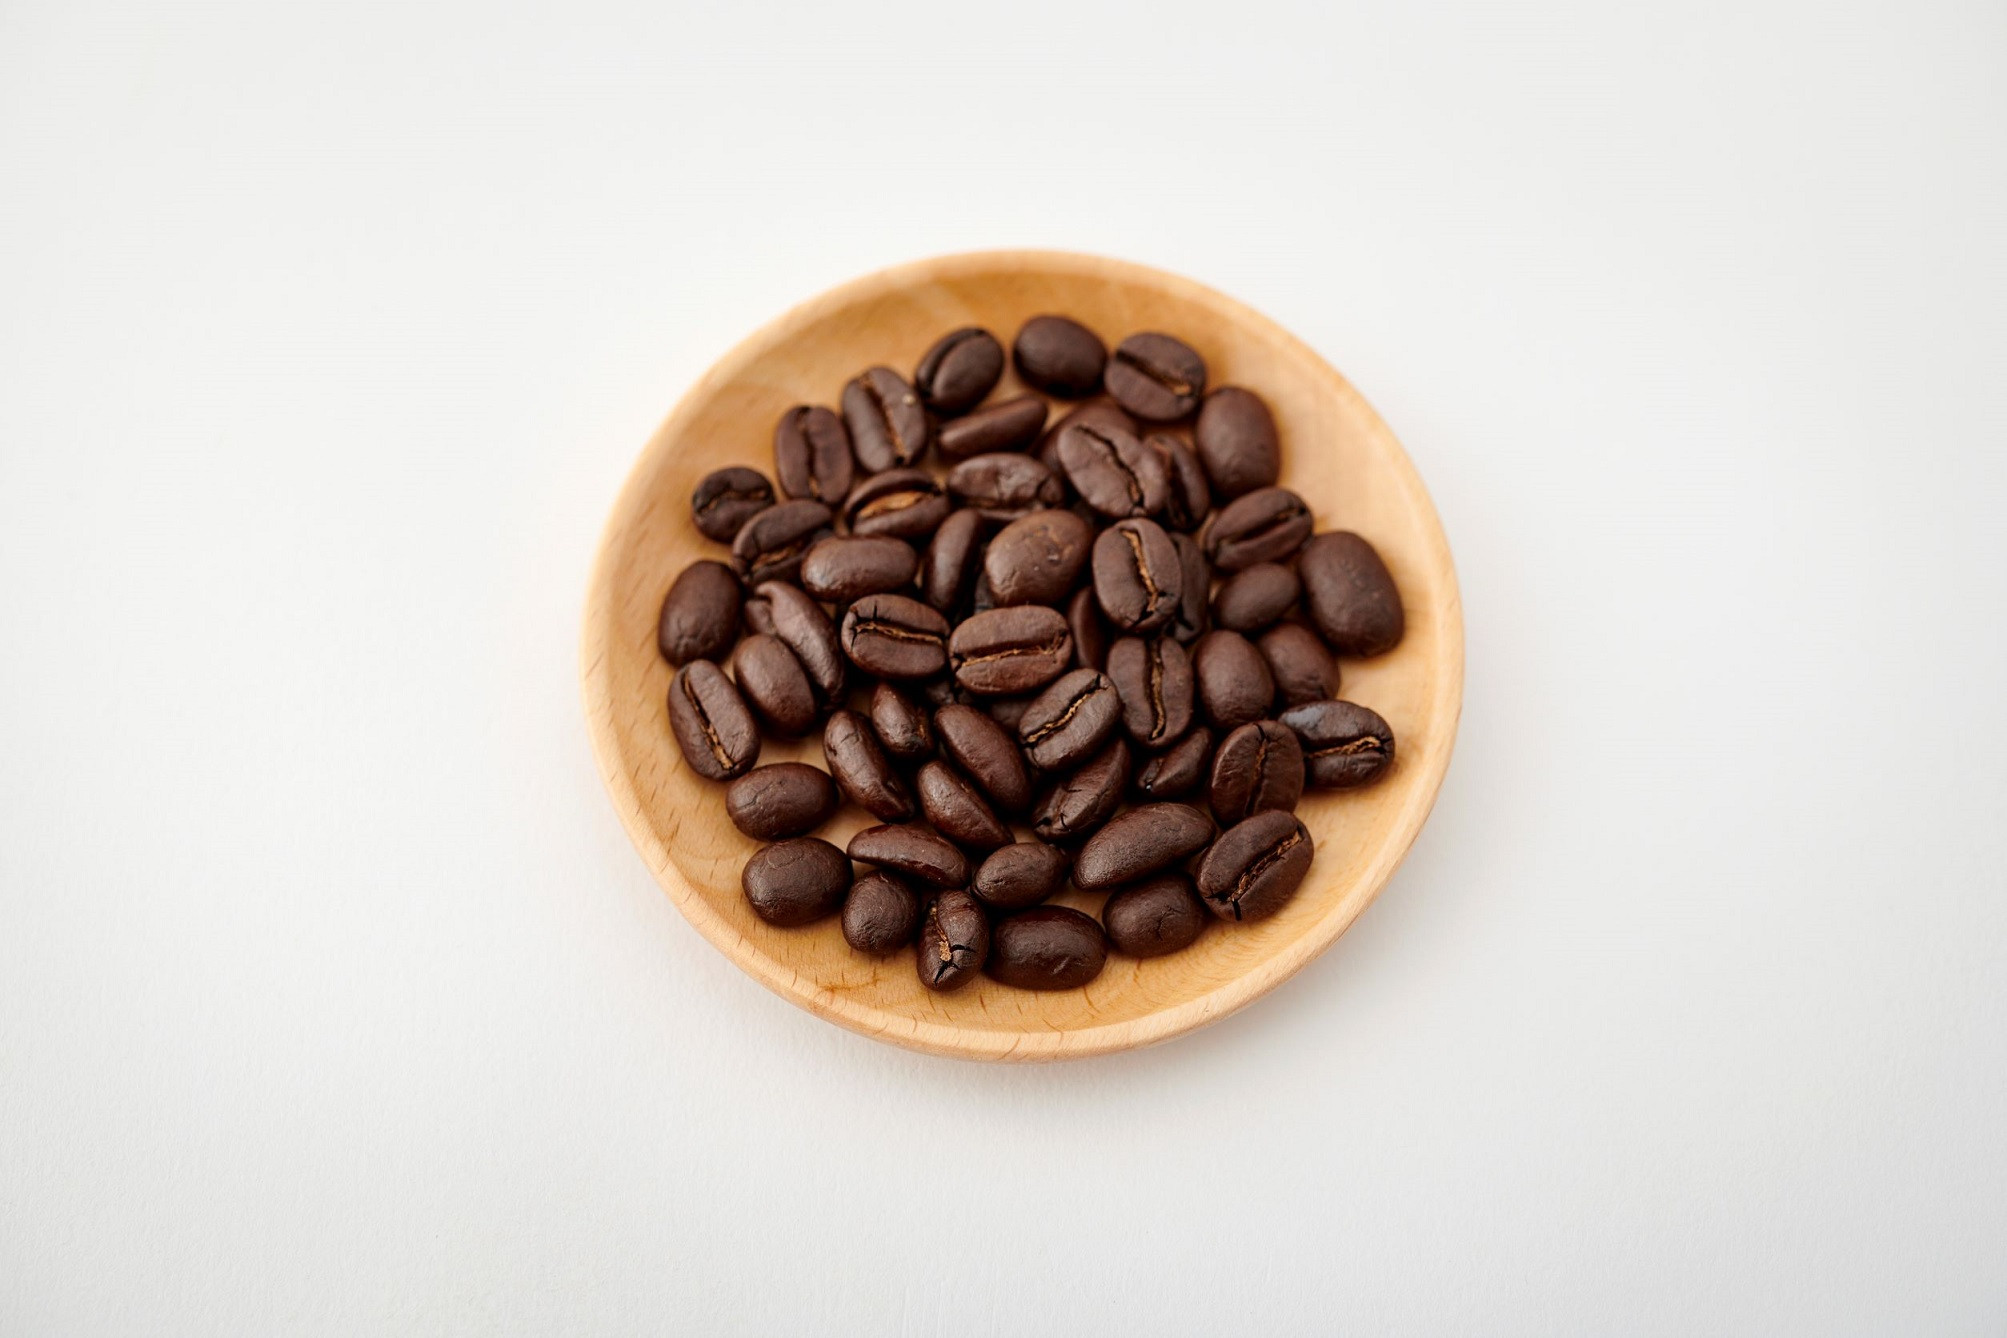 スペシャリティ自家焙煎コーヒー(豆) 中煎り 4種類詰め合わせ 400g(100g×4袋)